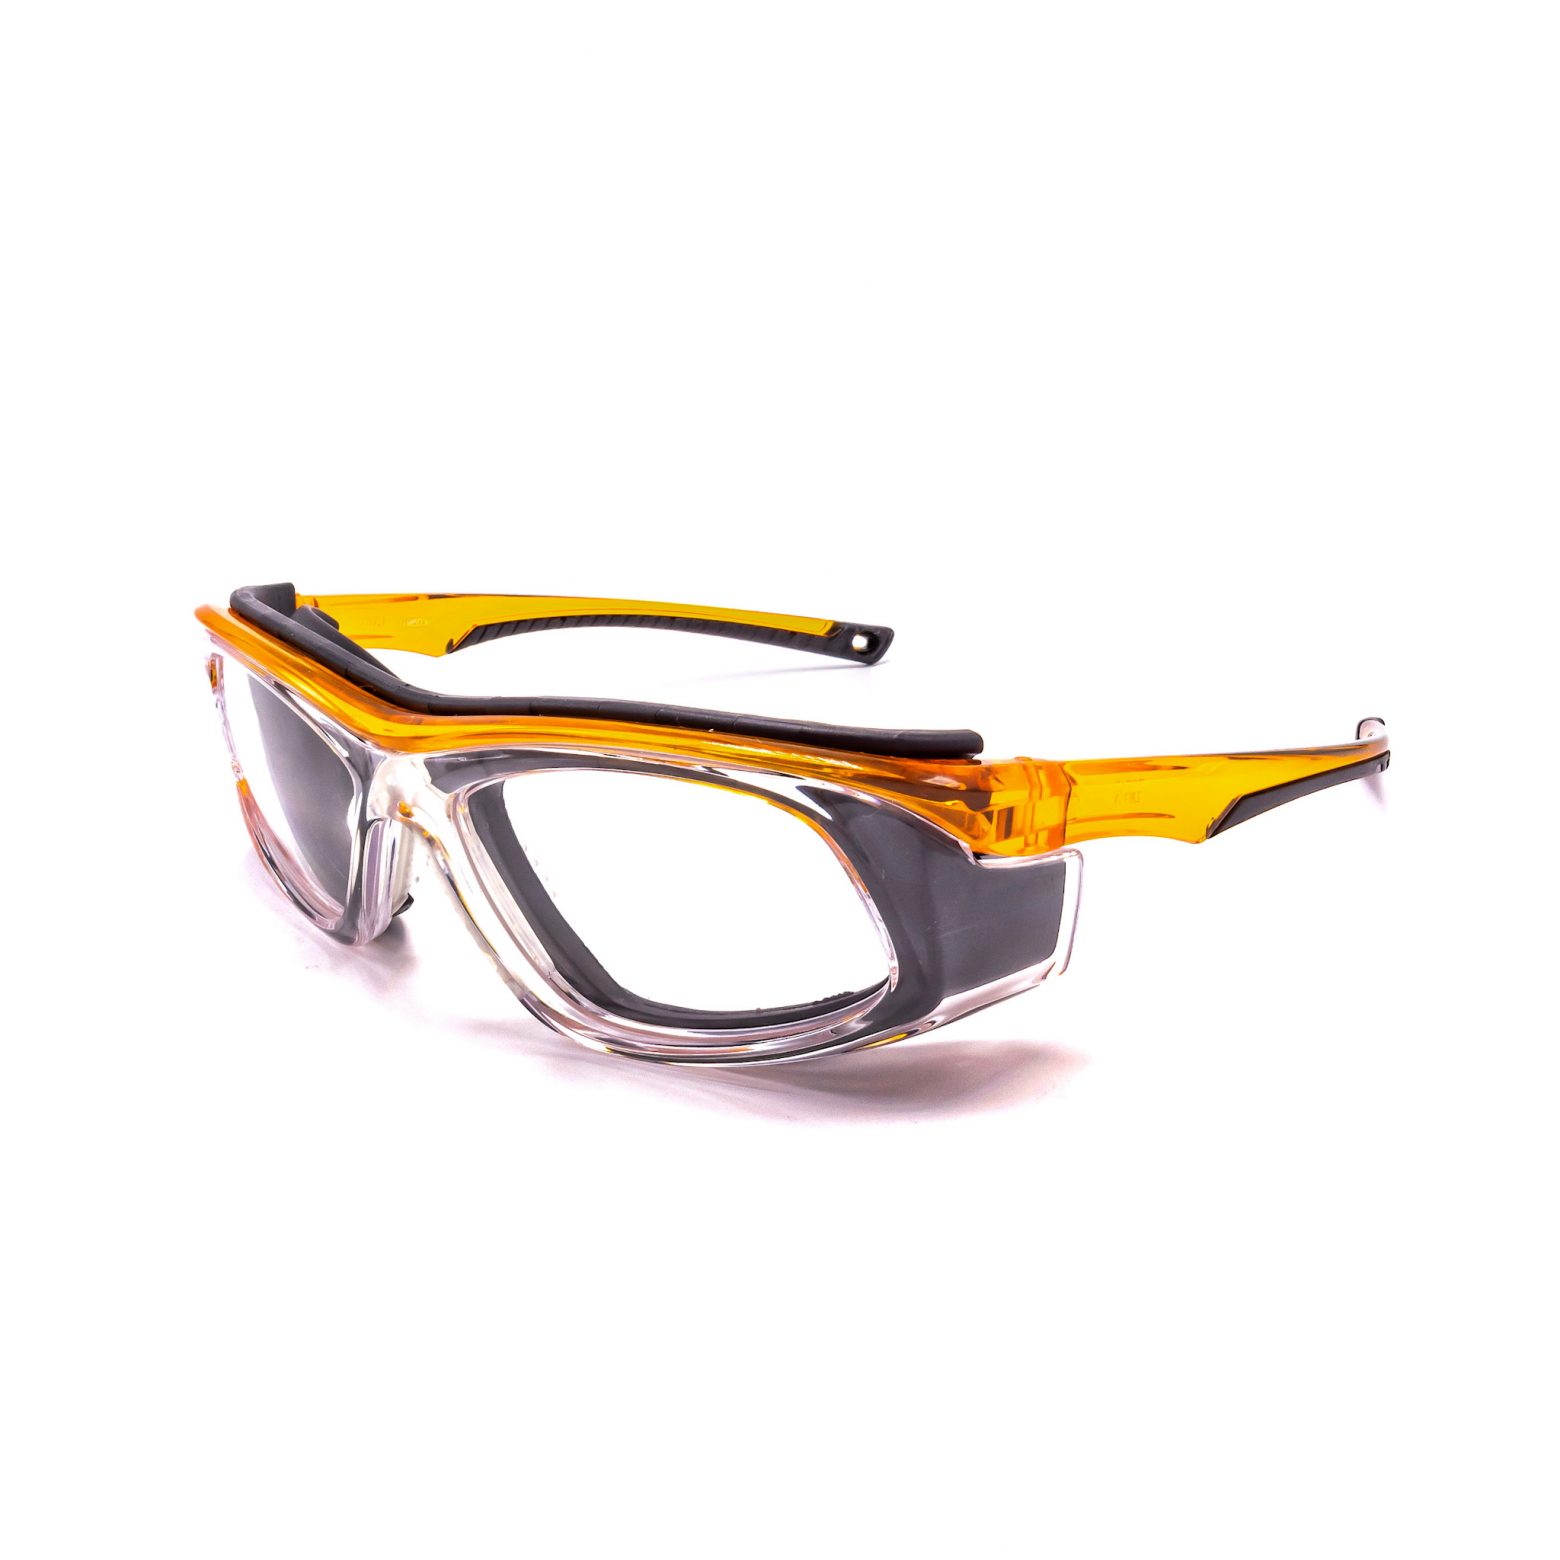 Transition Safety Glasses - RX Safety